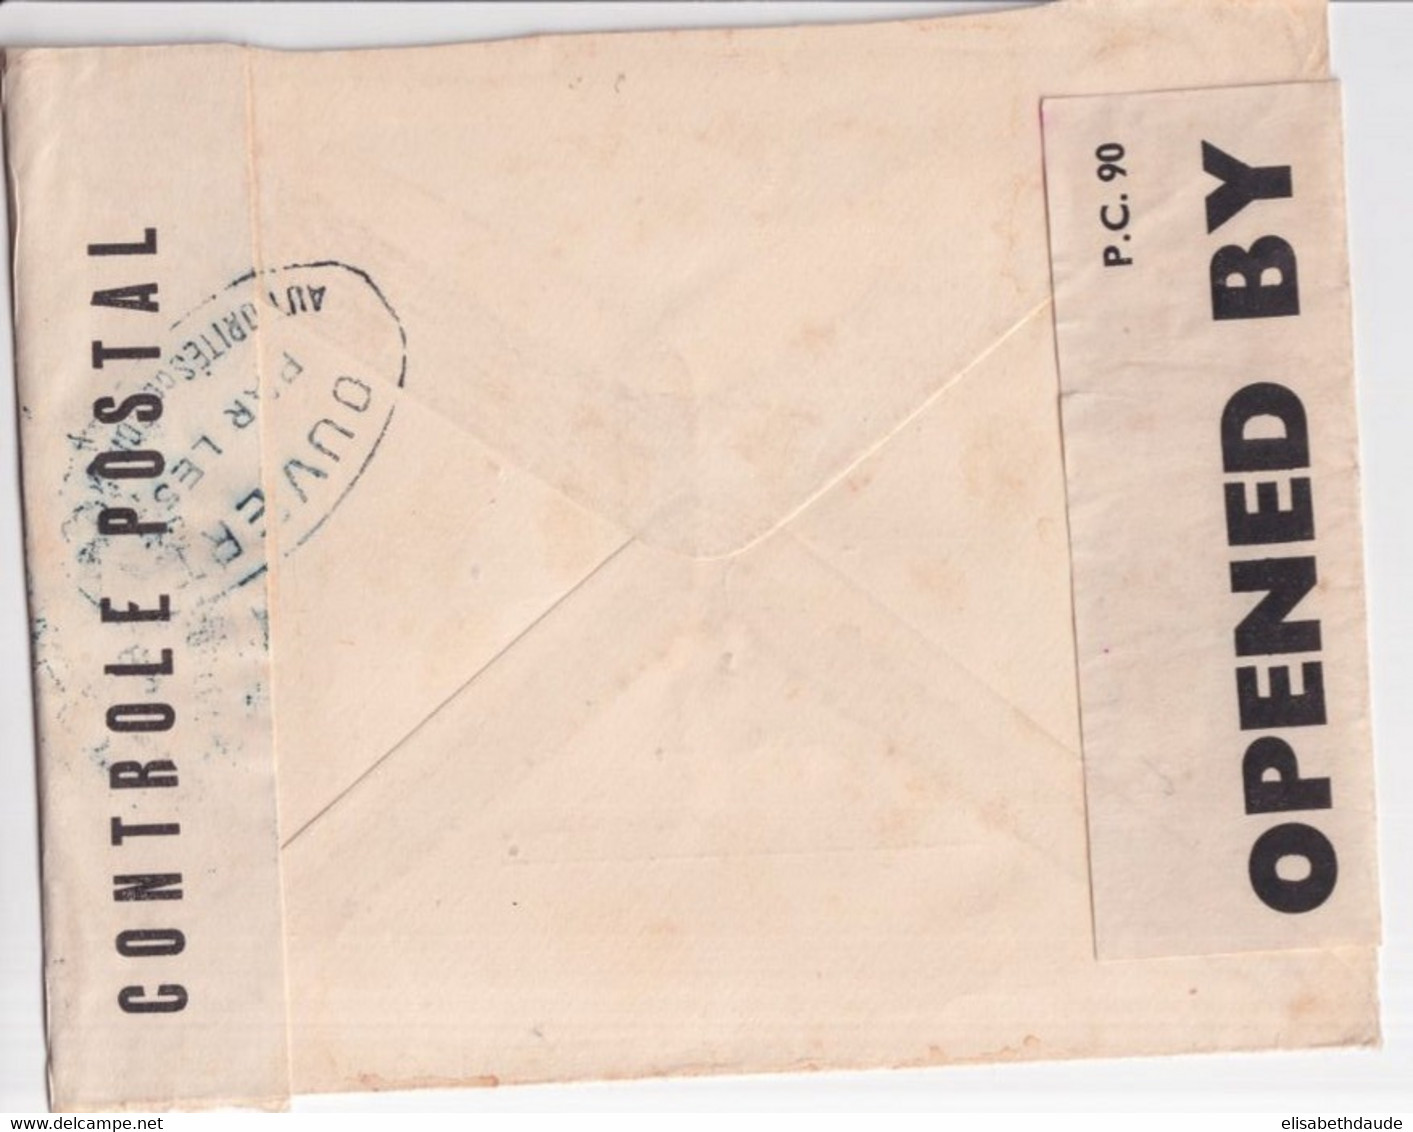 1943 - CROIX-ROUGE - ENVELOPPE DOUBLE CENSURE ! De LONDON => DAKAR (SENEGAL) ! - Croix Rouge